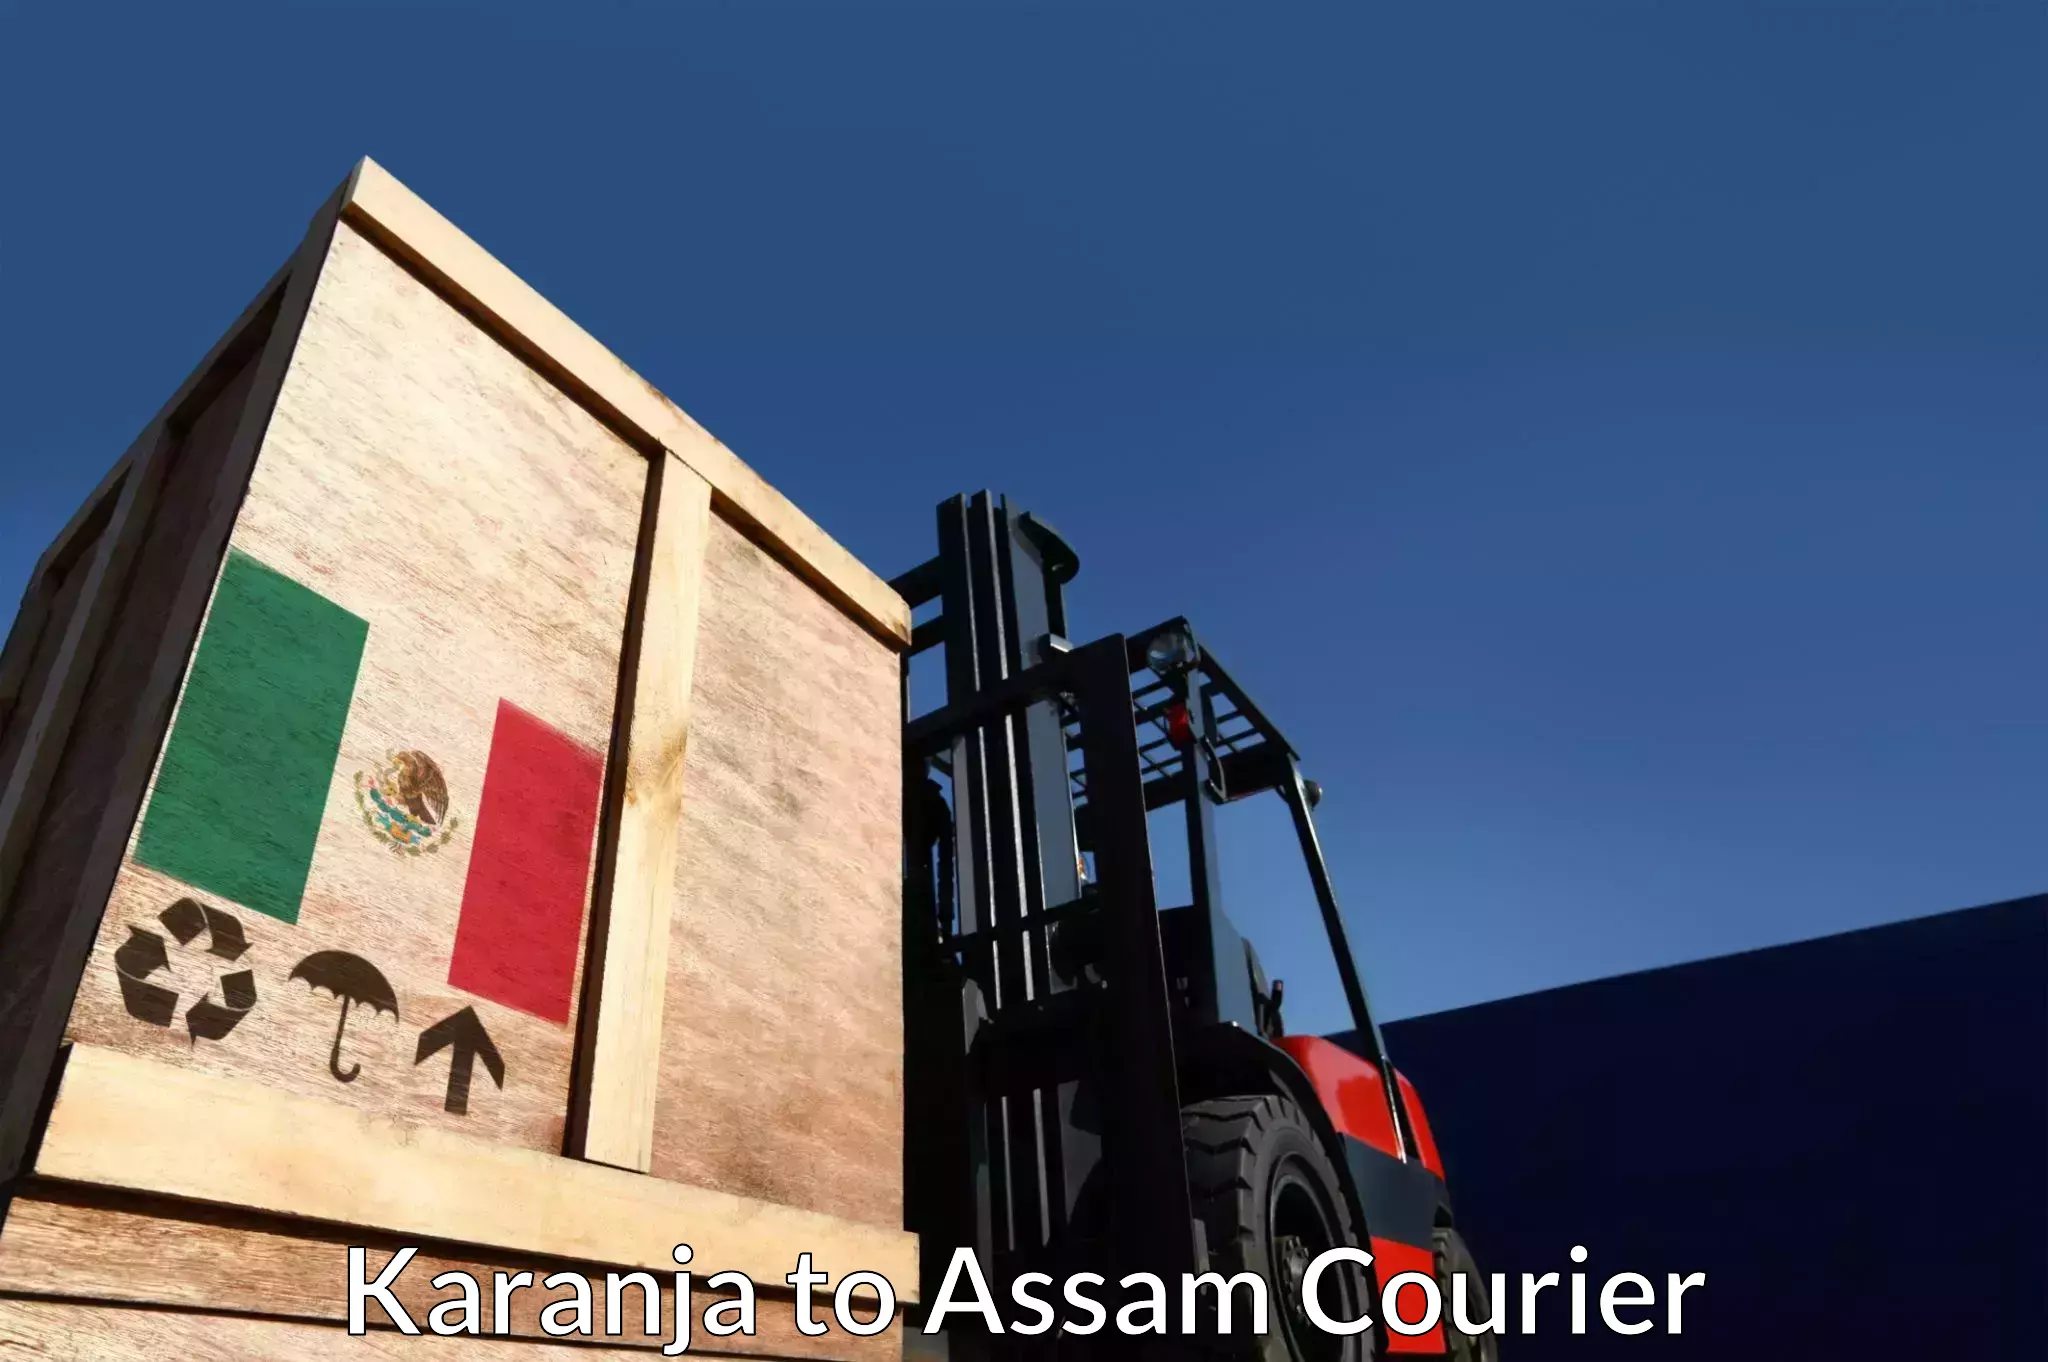 Parcel service for businesses Karanja to Assam